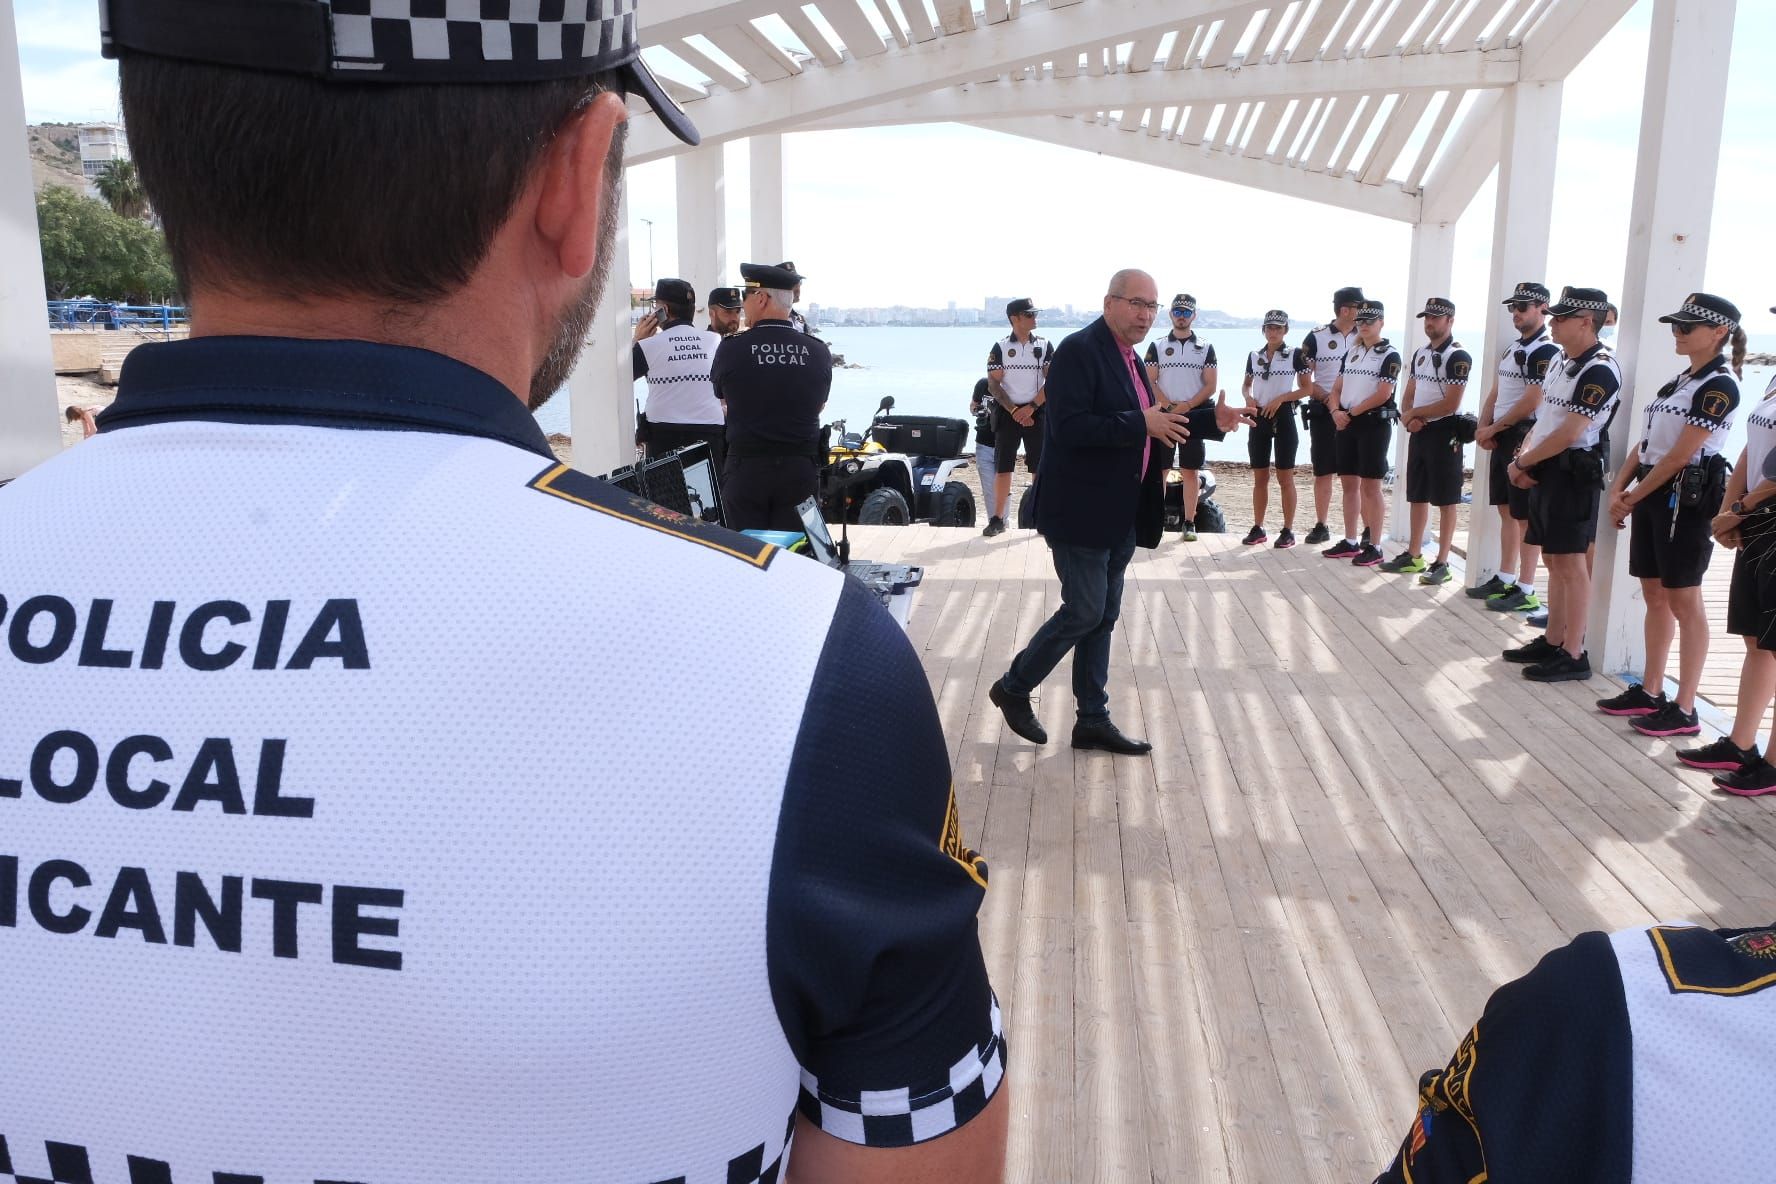 La Policía Local reforzará el control del botellón en las playas y calas de Alicante